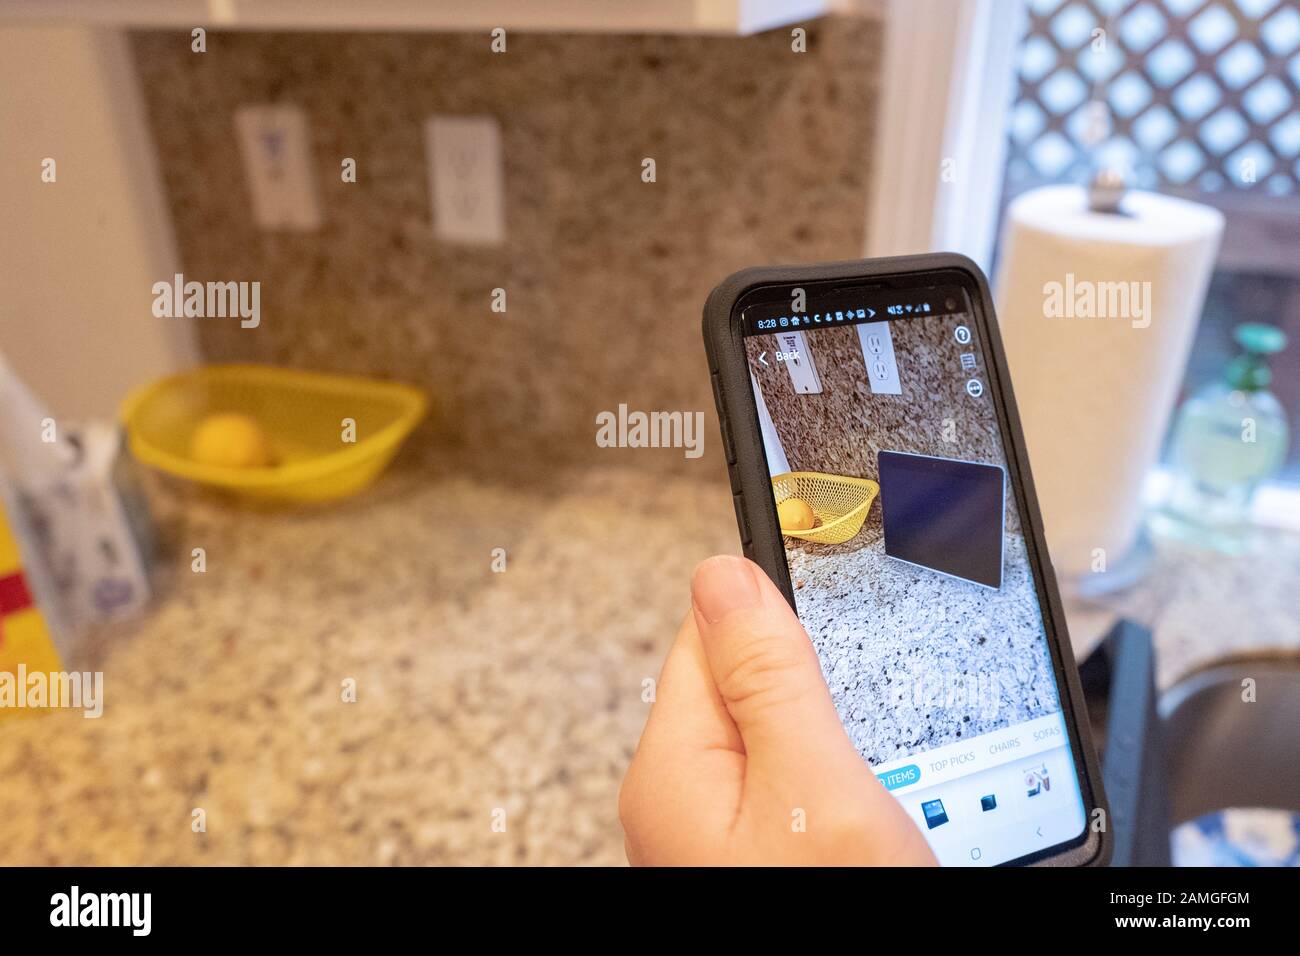 Main d'un homme tenant un smartphone et utilisant les fonctionnalités De  Réalité augmentée dans l'application Amazon shopping pour visualiser un  appareil Amazon Echo Show sur un comptoir de cuisine, San Ramon, Californie,